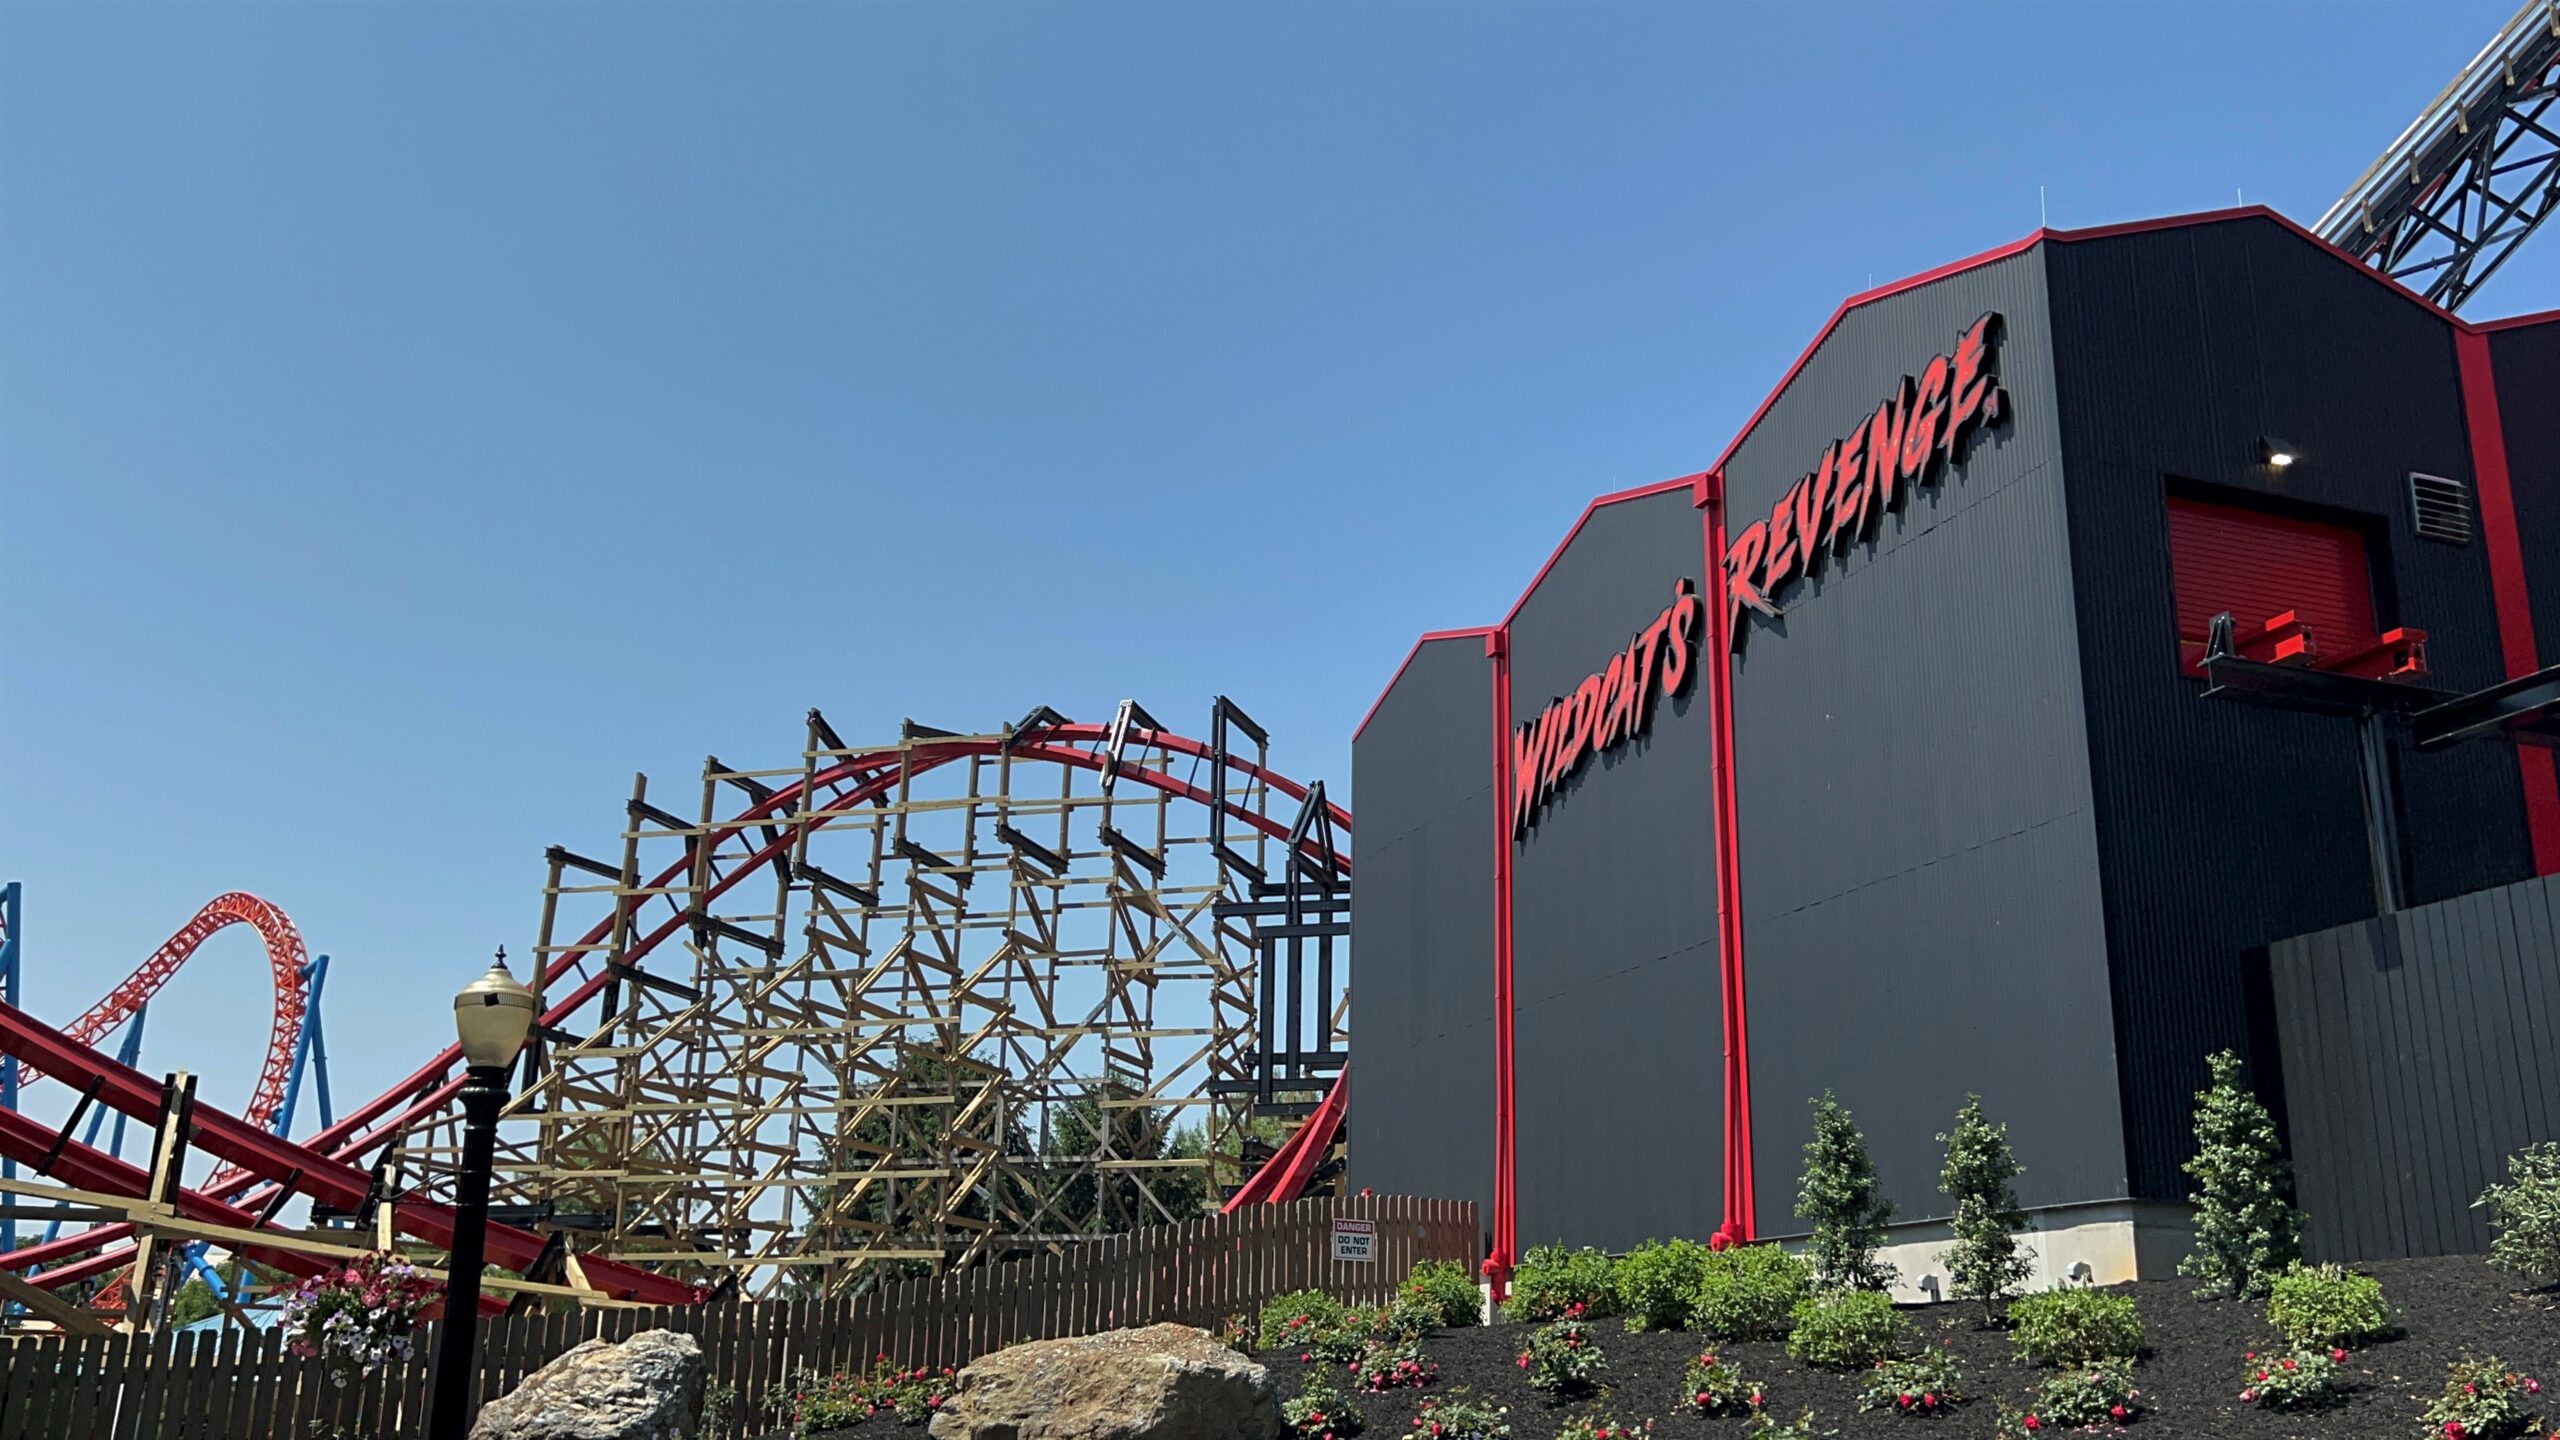 New for 2023 Hersheypark Wildcat’s Revenge Roller Coaster POV!